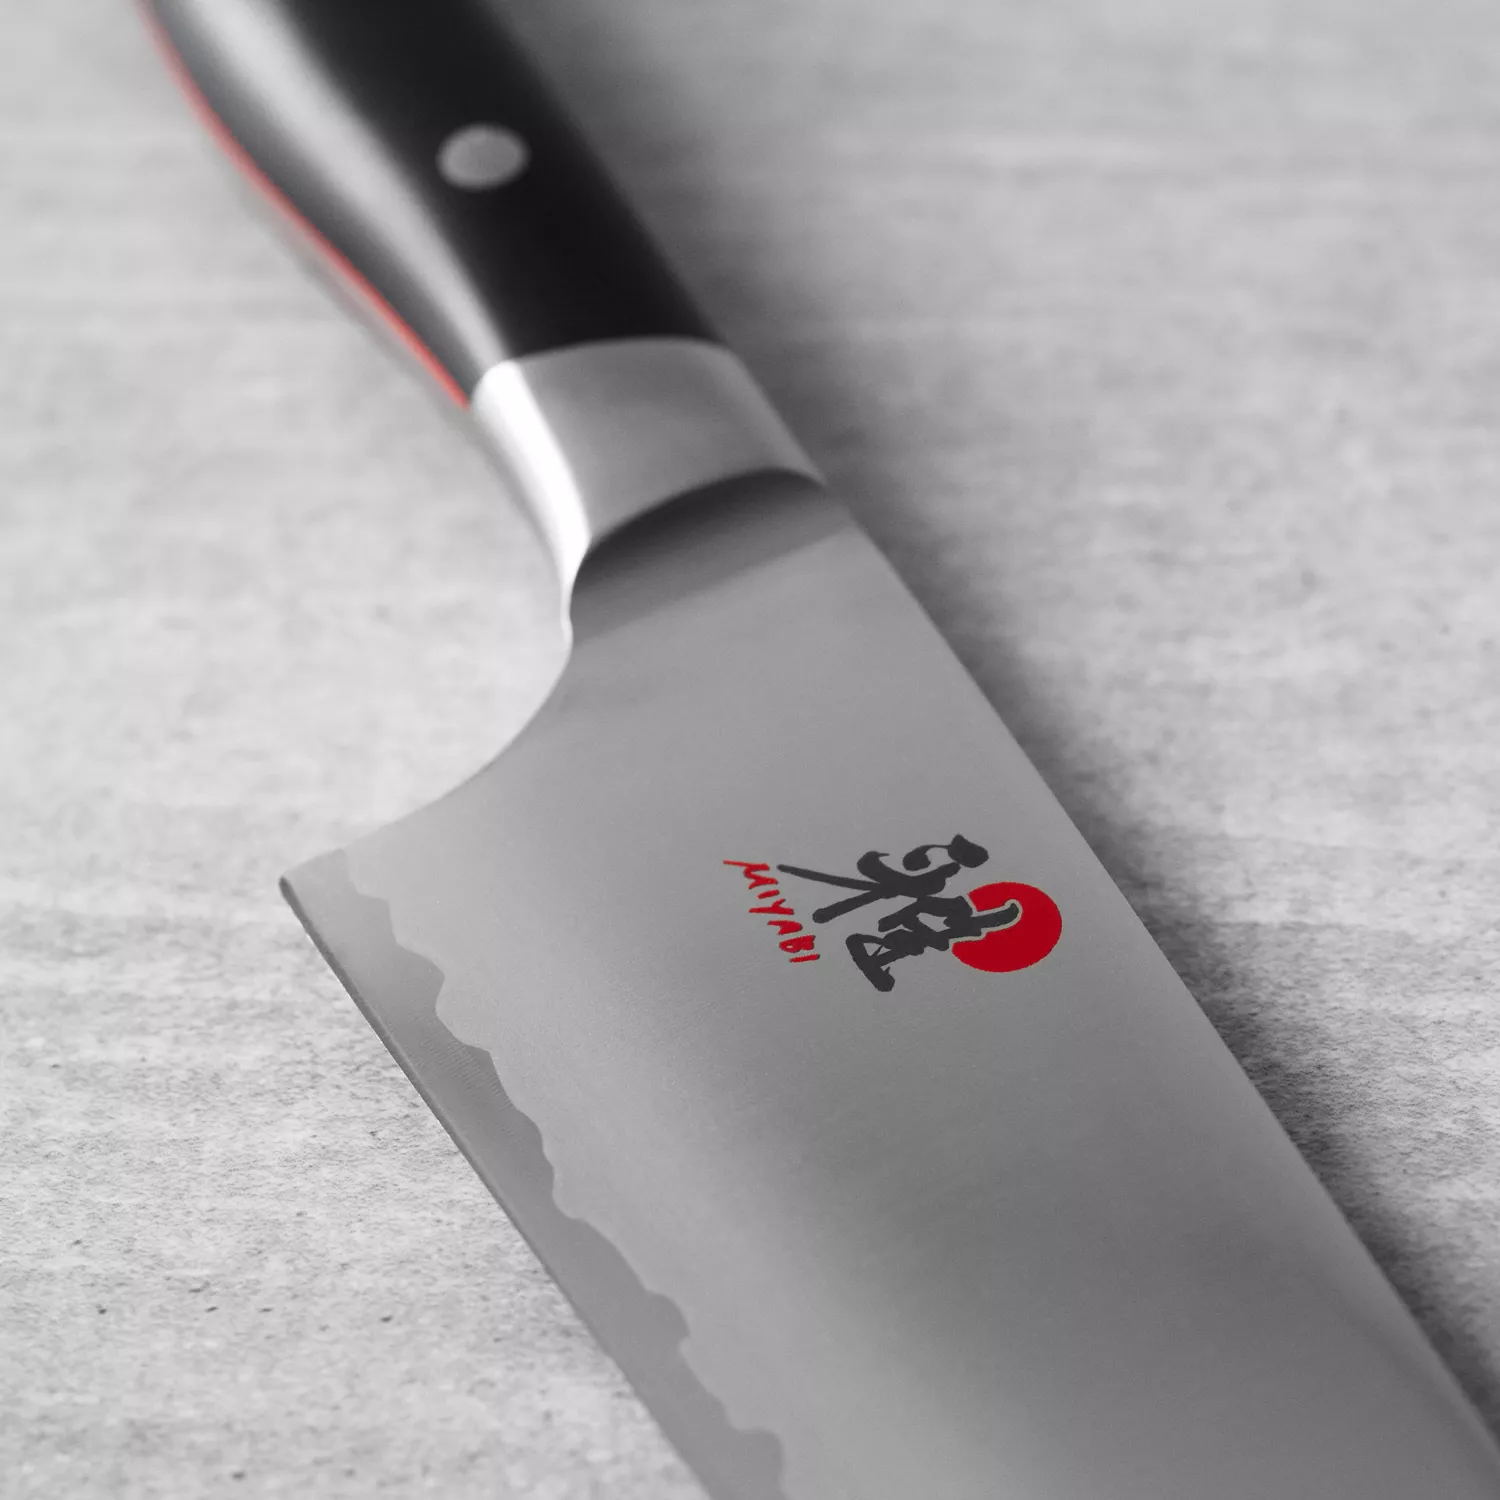 Miyabi Artisan Knife Block, Set of 7